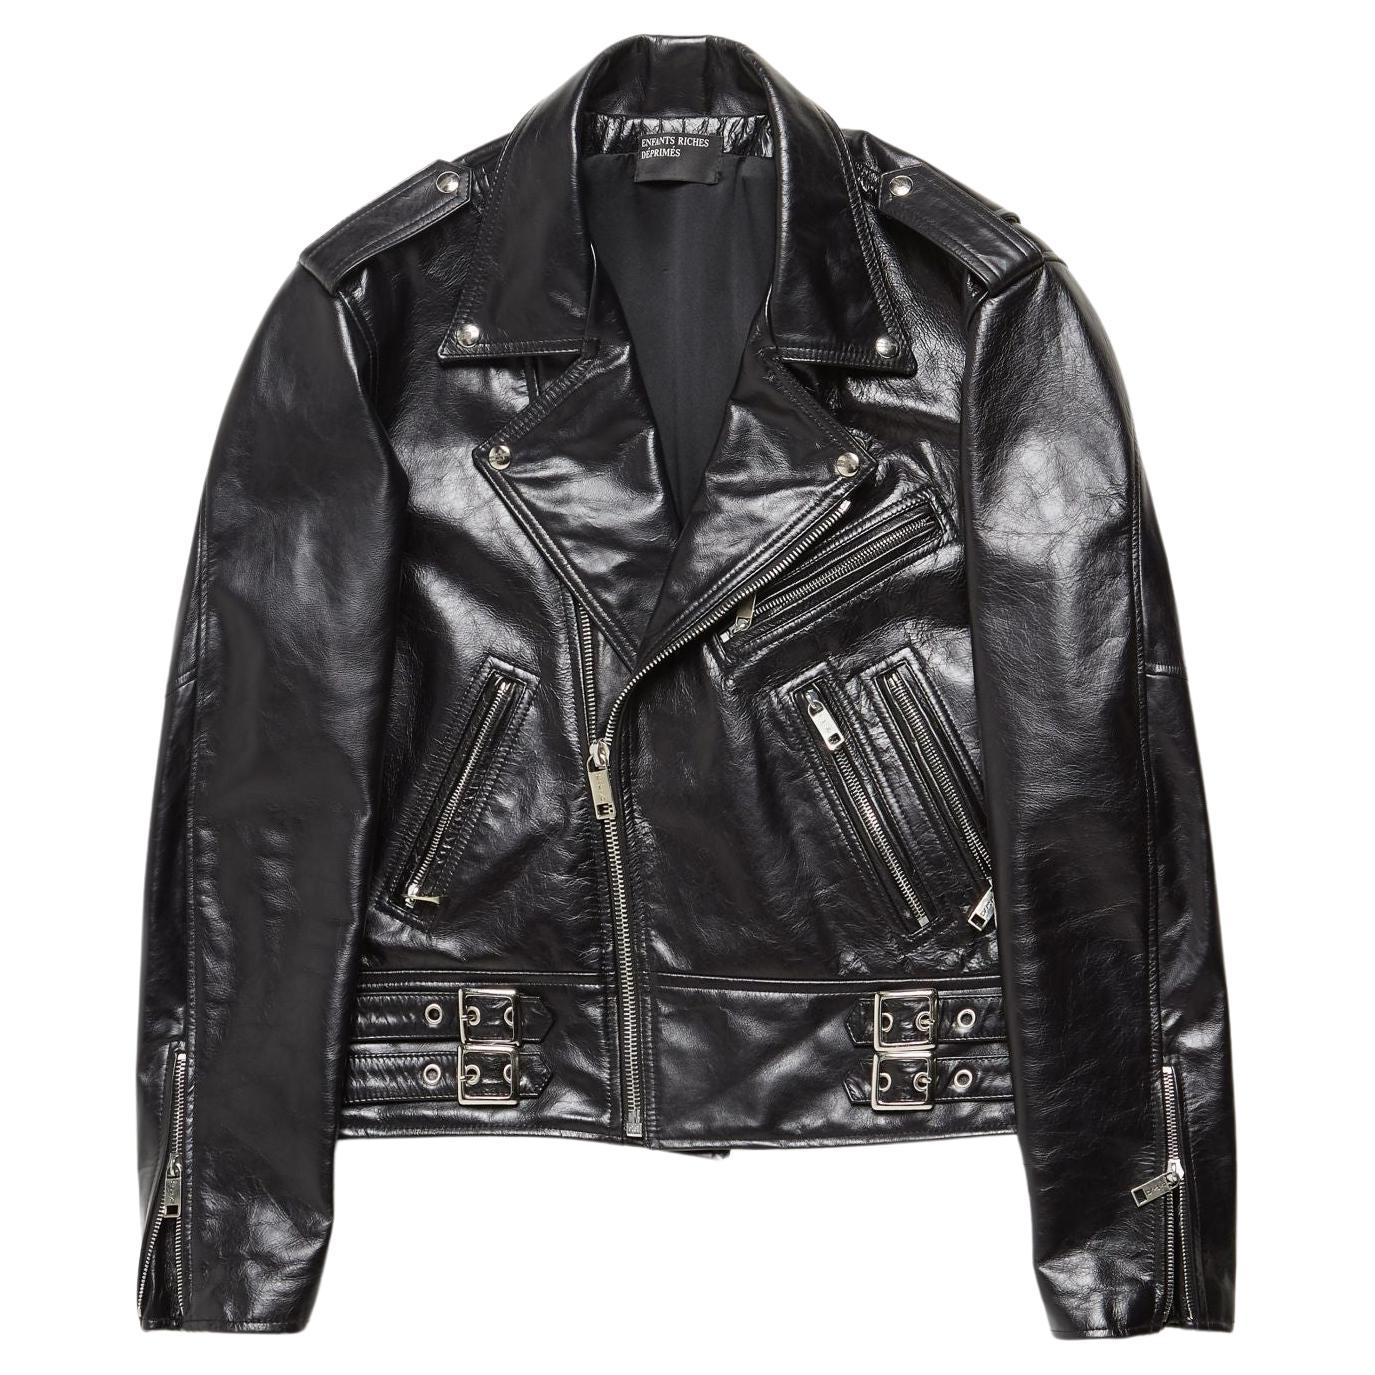 Enfants Riches Deprimes jacket leather  Black  Black Back Man Printed Zipper Det For Sale